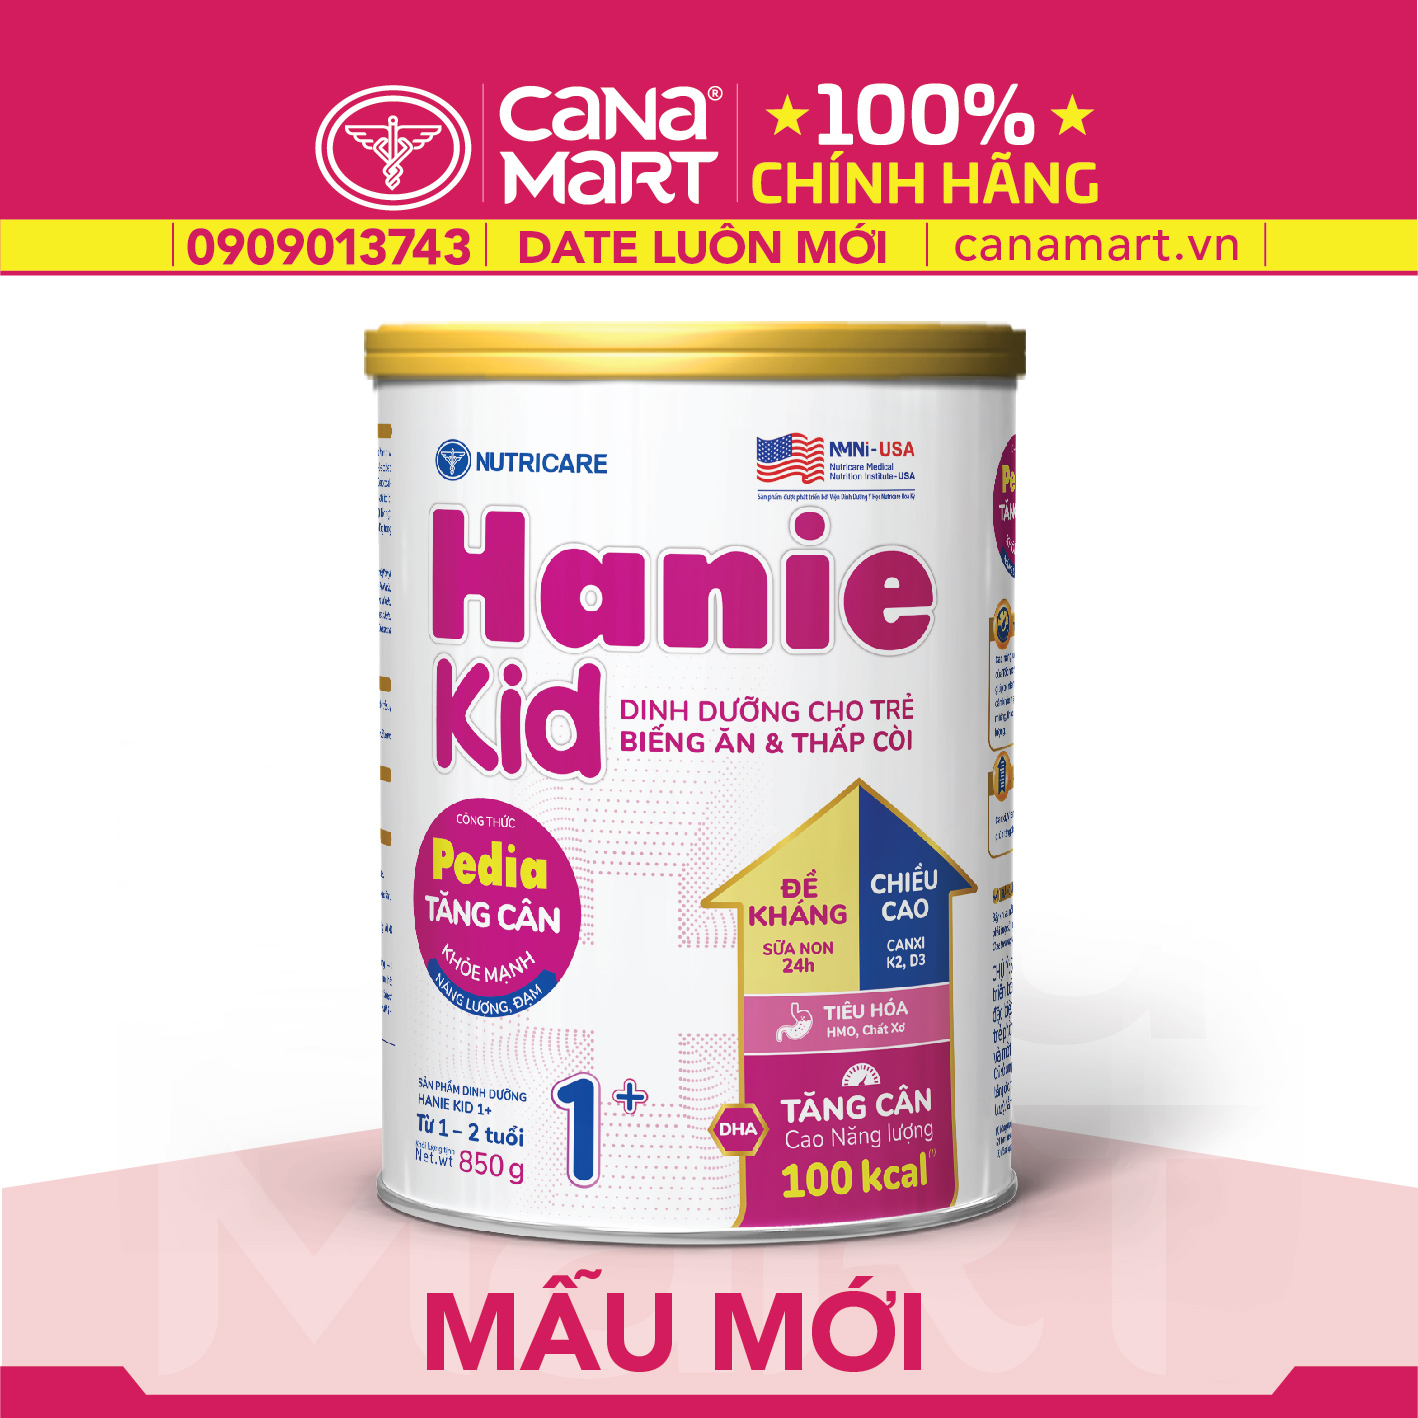 Sữa bột tốt cho bé Nutricare Hanie Kid 1+ dinh dưỡng cho trẻ biếng ăn, suy dinh dưỡng (850g)